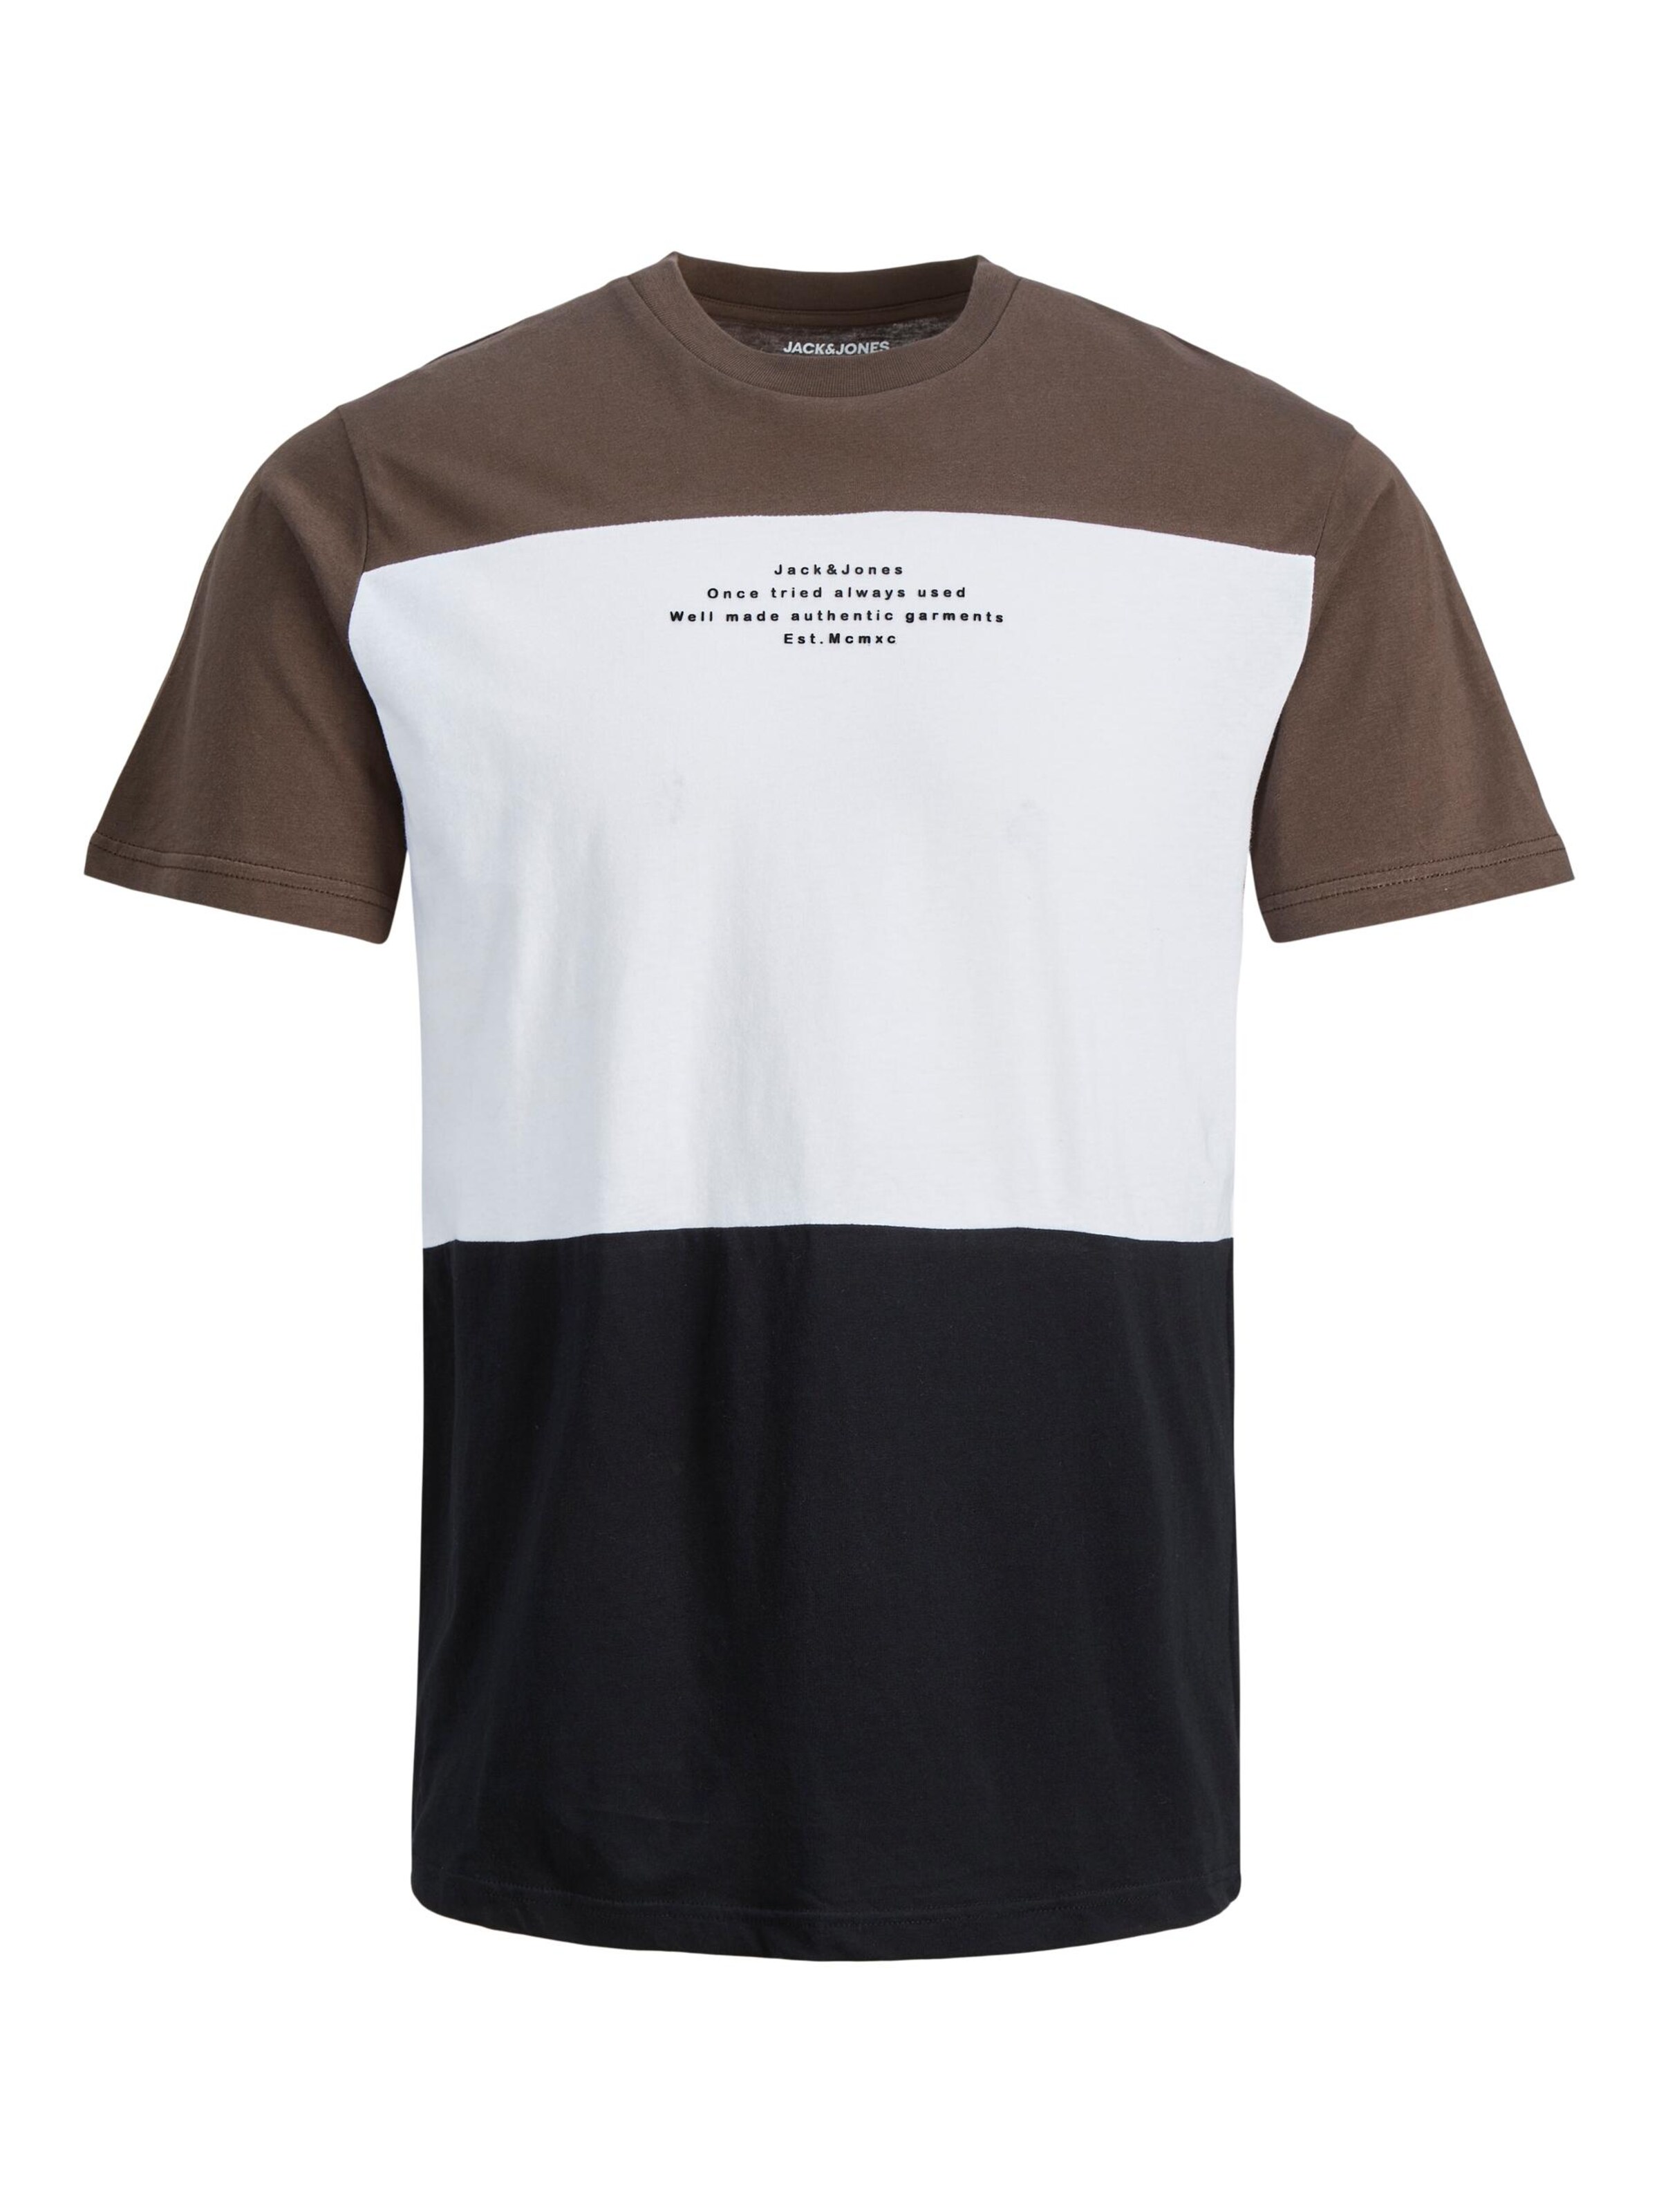 HERREN Hemden & T-Shirts Regular fit Neak peak T-Shirt Rabatt 97 % Braun M 